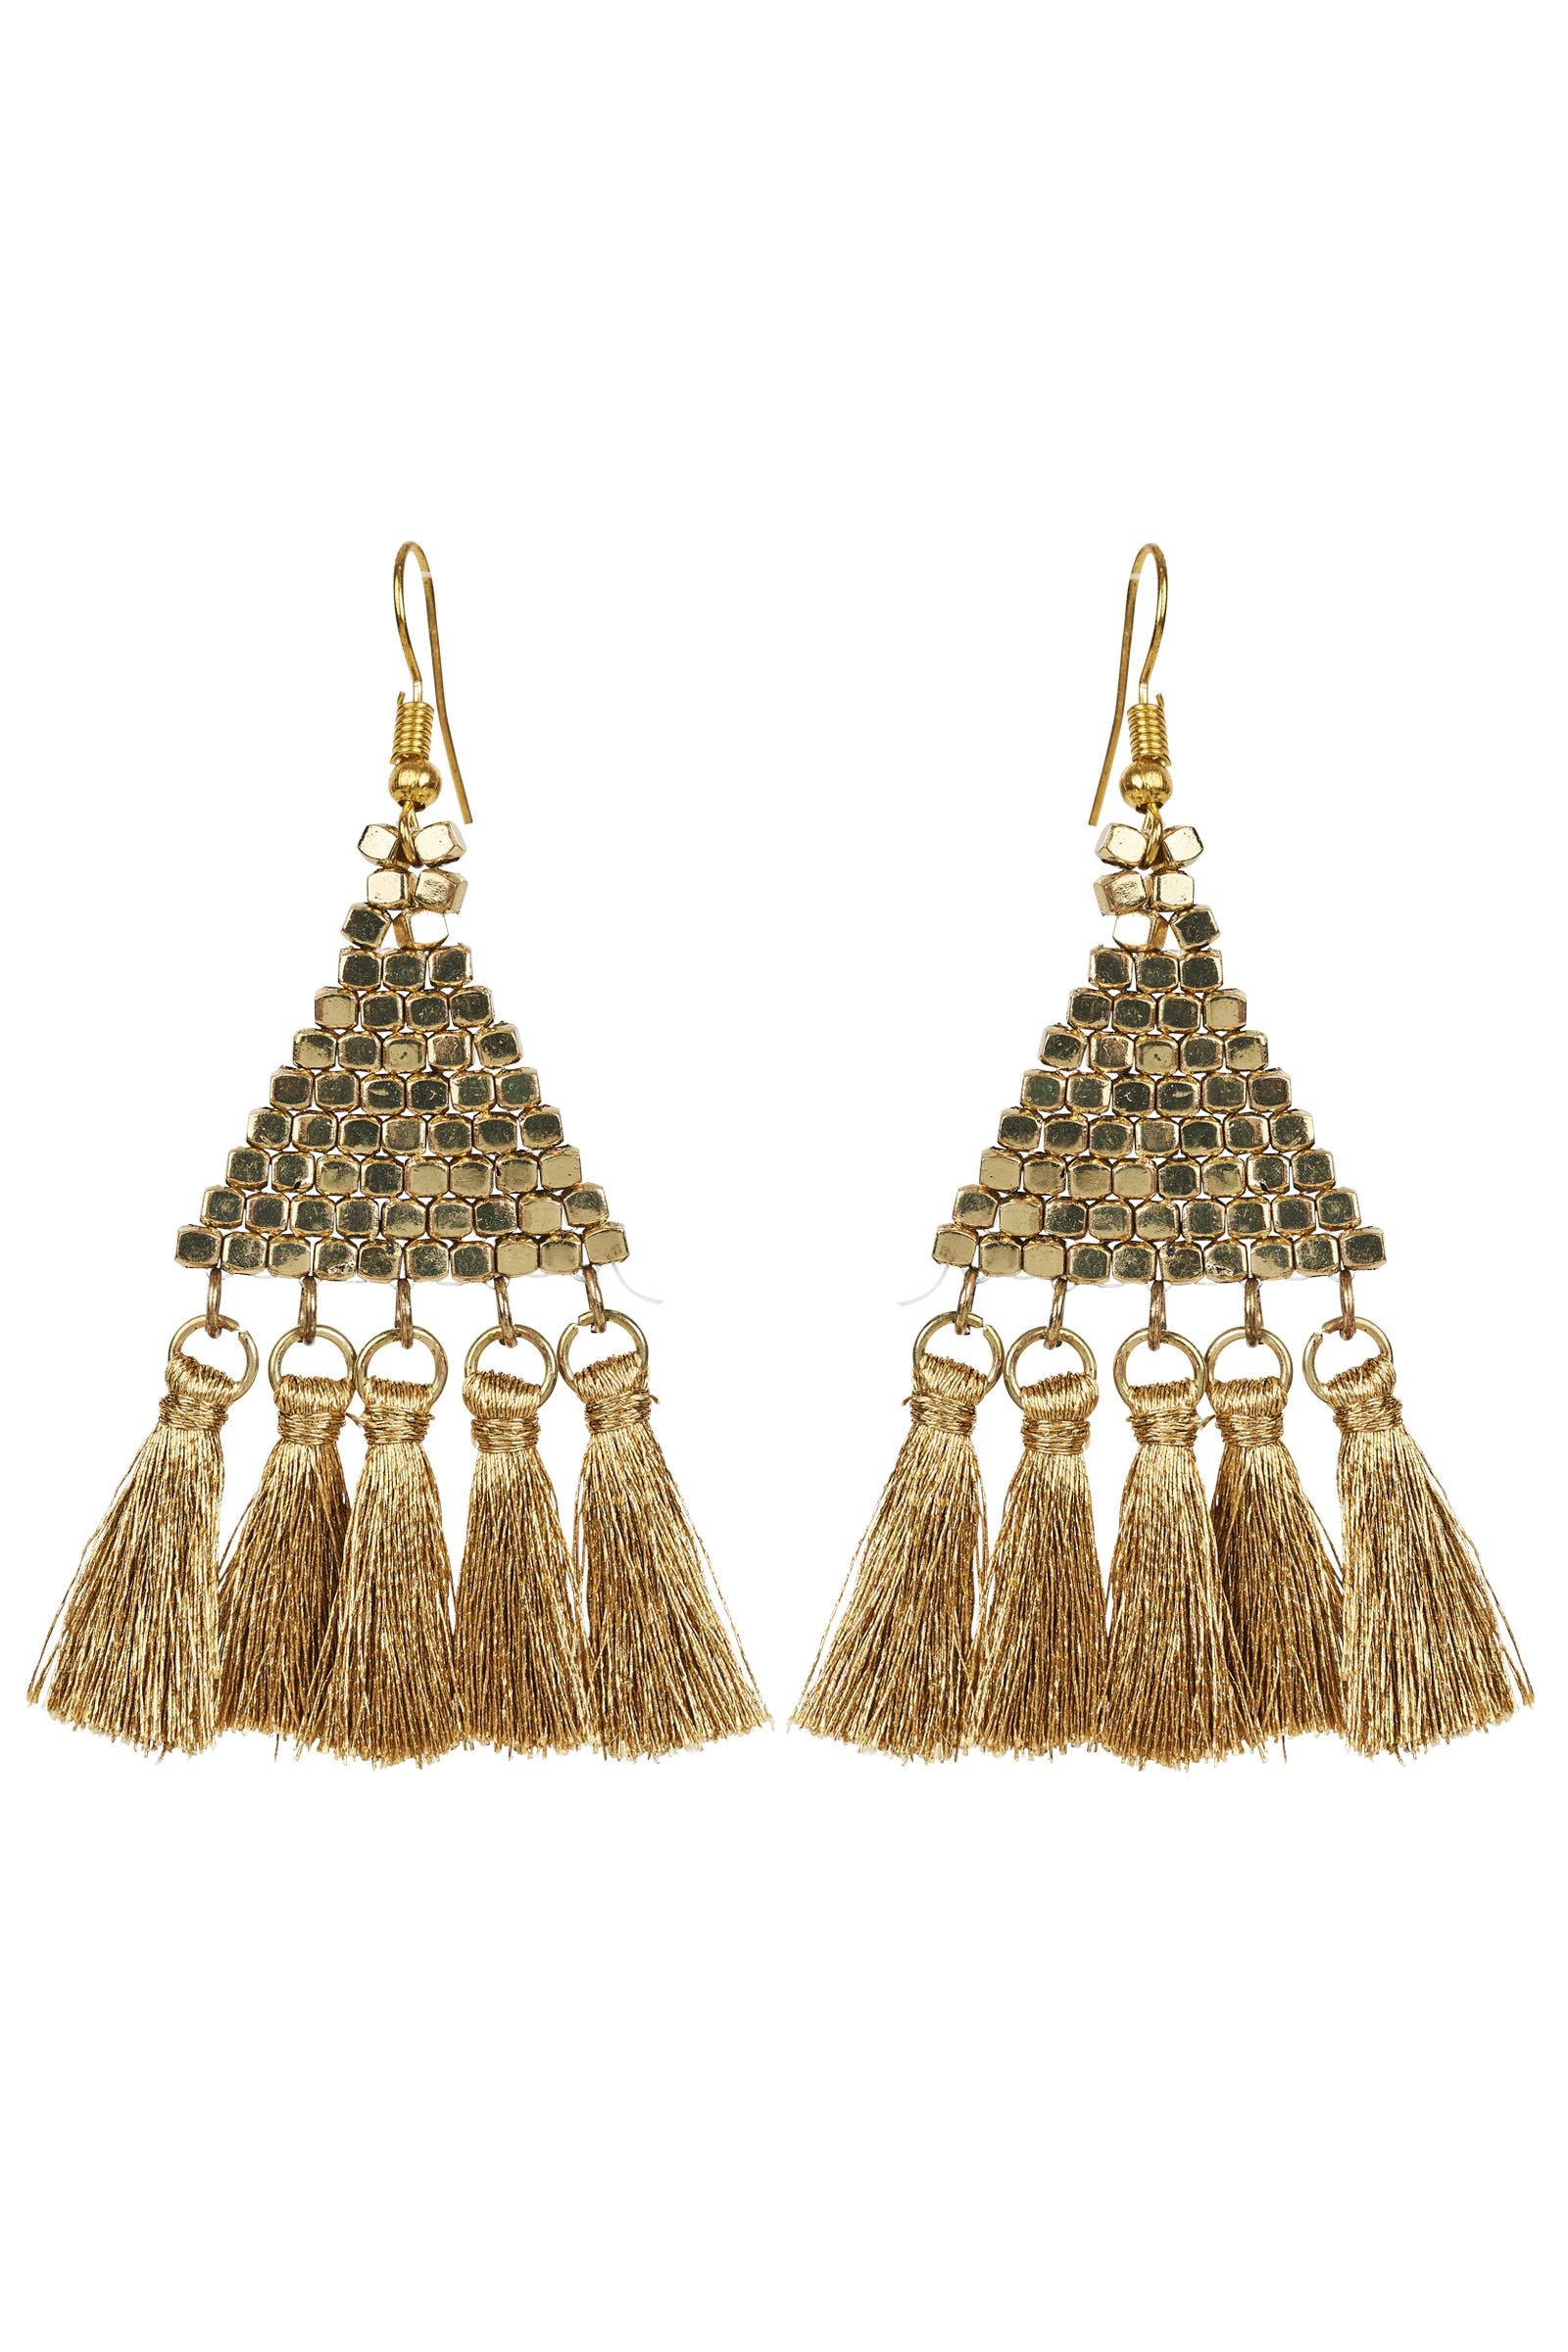 Marra Tassel Earring - Gold - eb&ive Earring